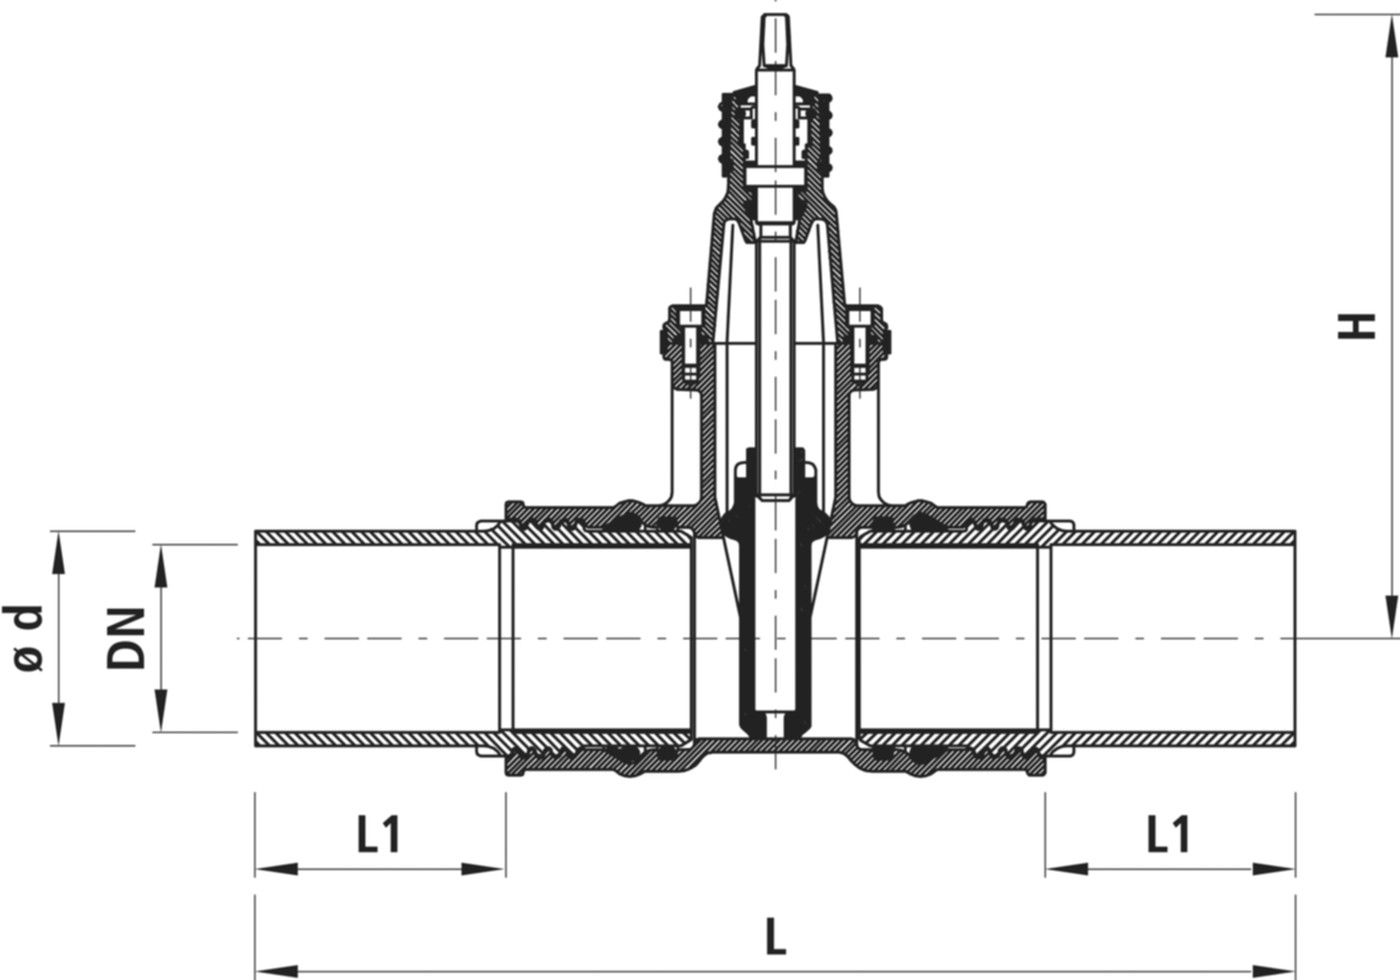 Einschweiss-Schieber für Gas 4815 DN 100 / d 110mm - Hawle Armaturen